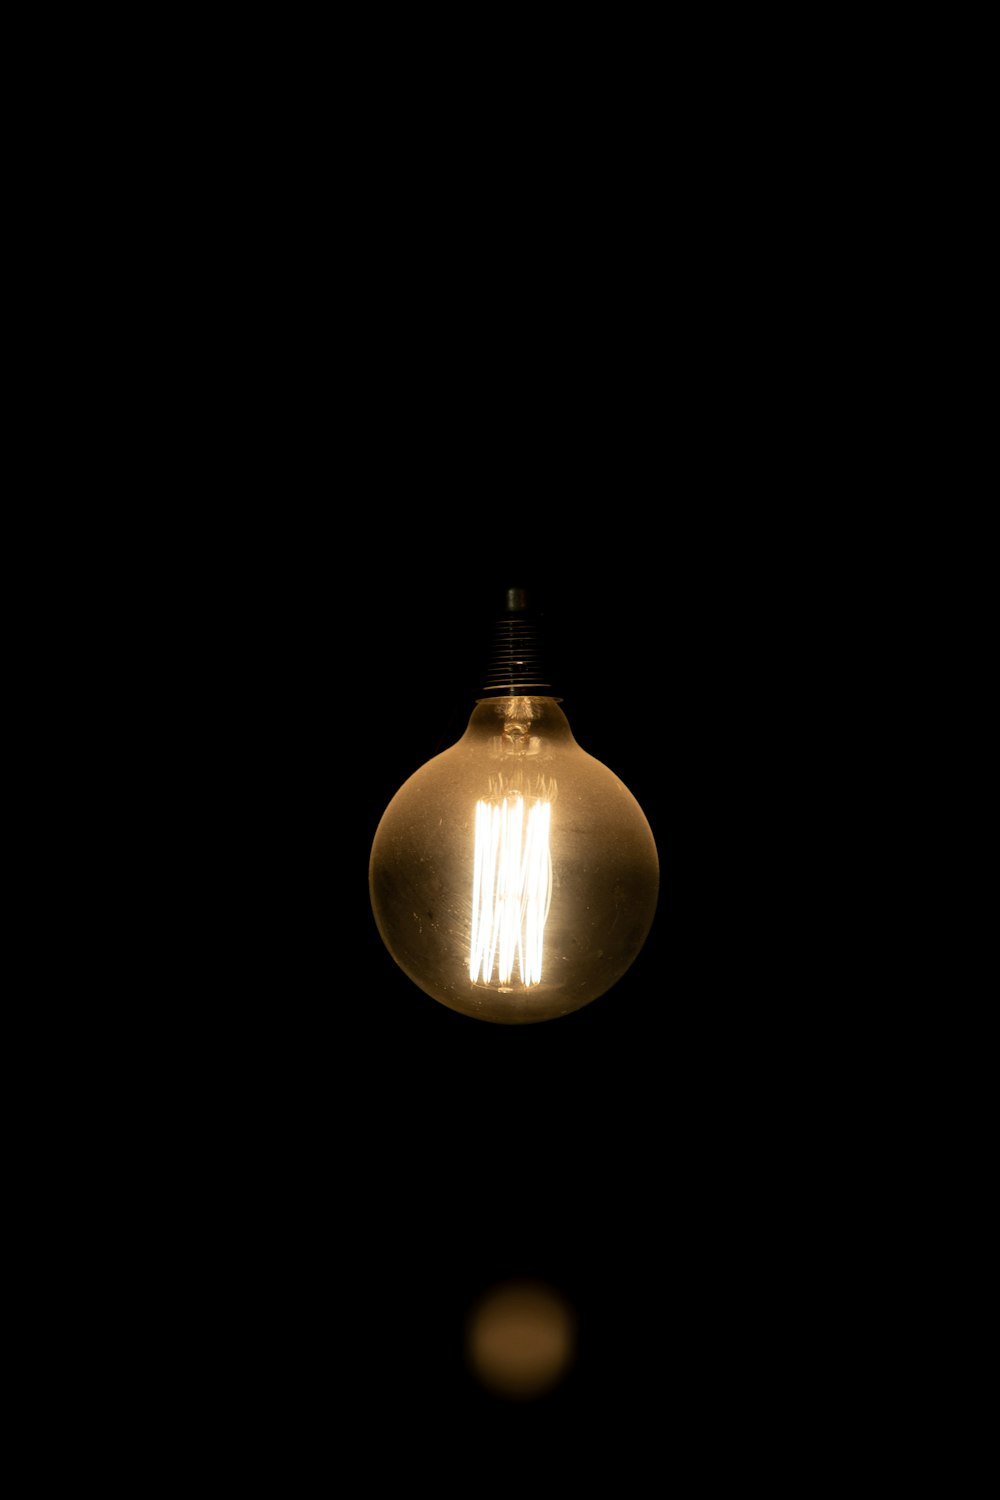 turned-on light bulb